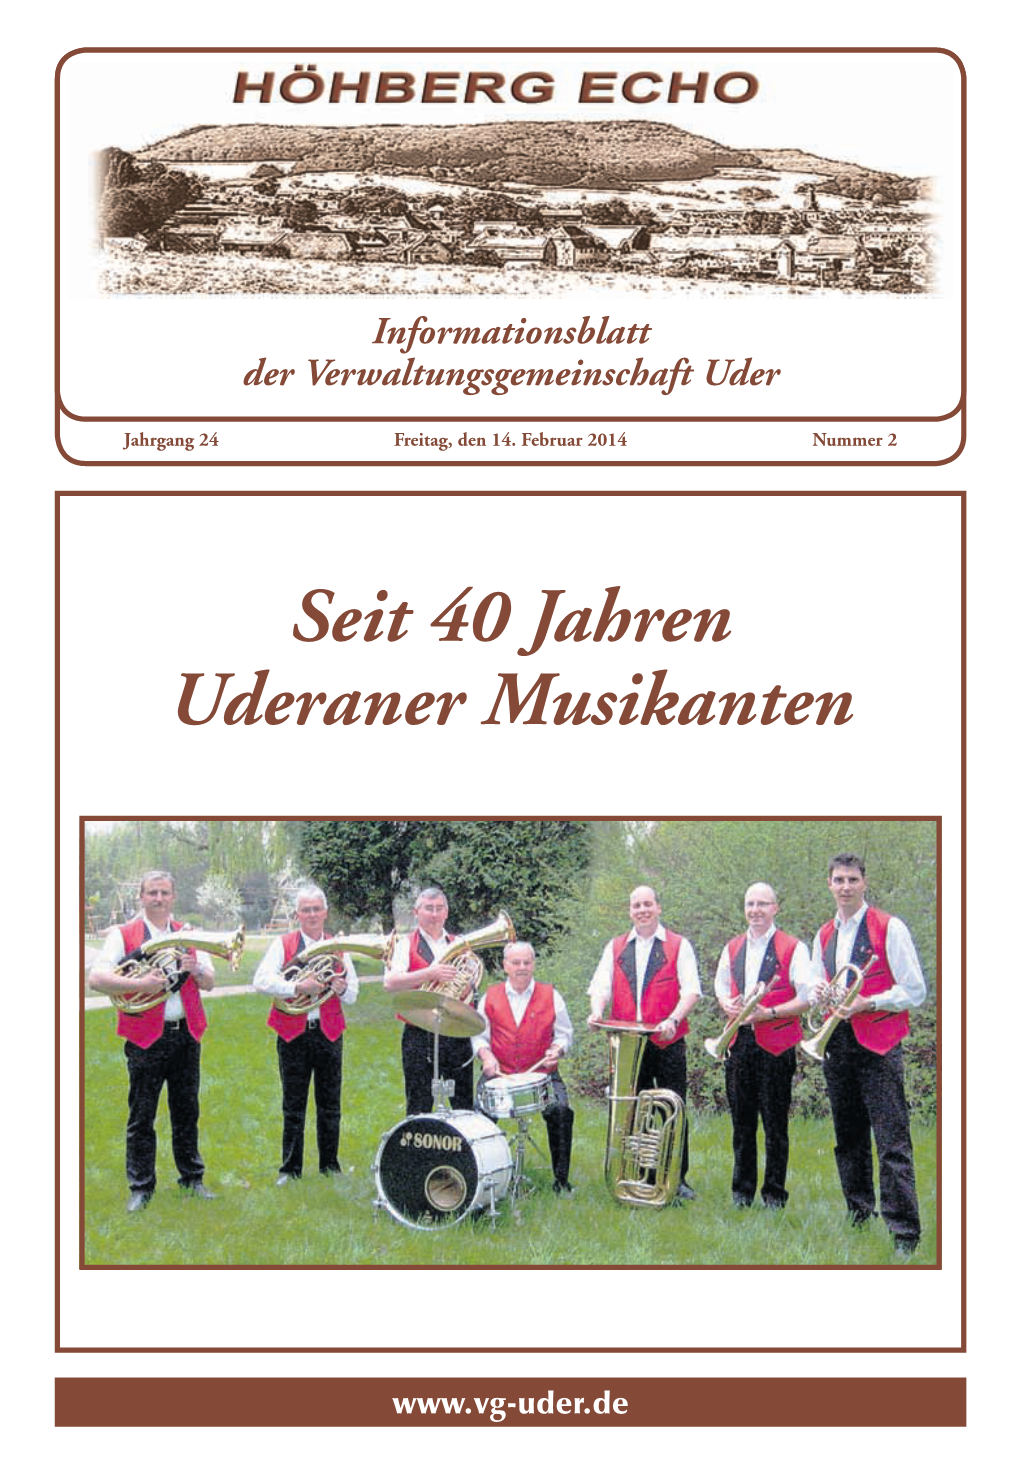 Seit 40 Jahren Uderaner Musikanten